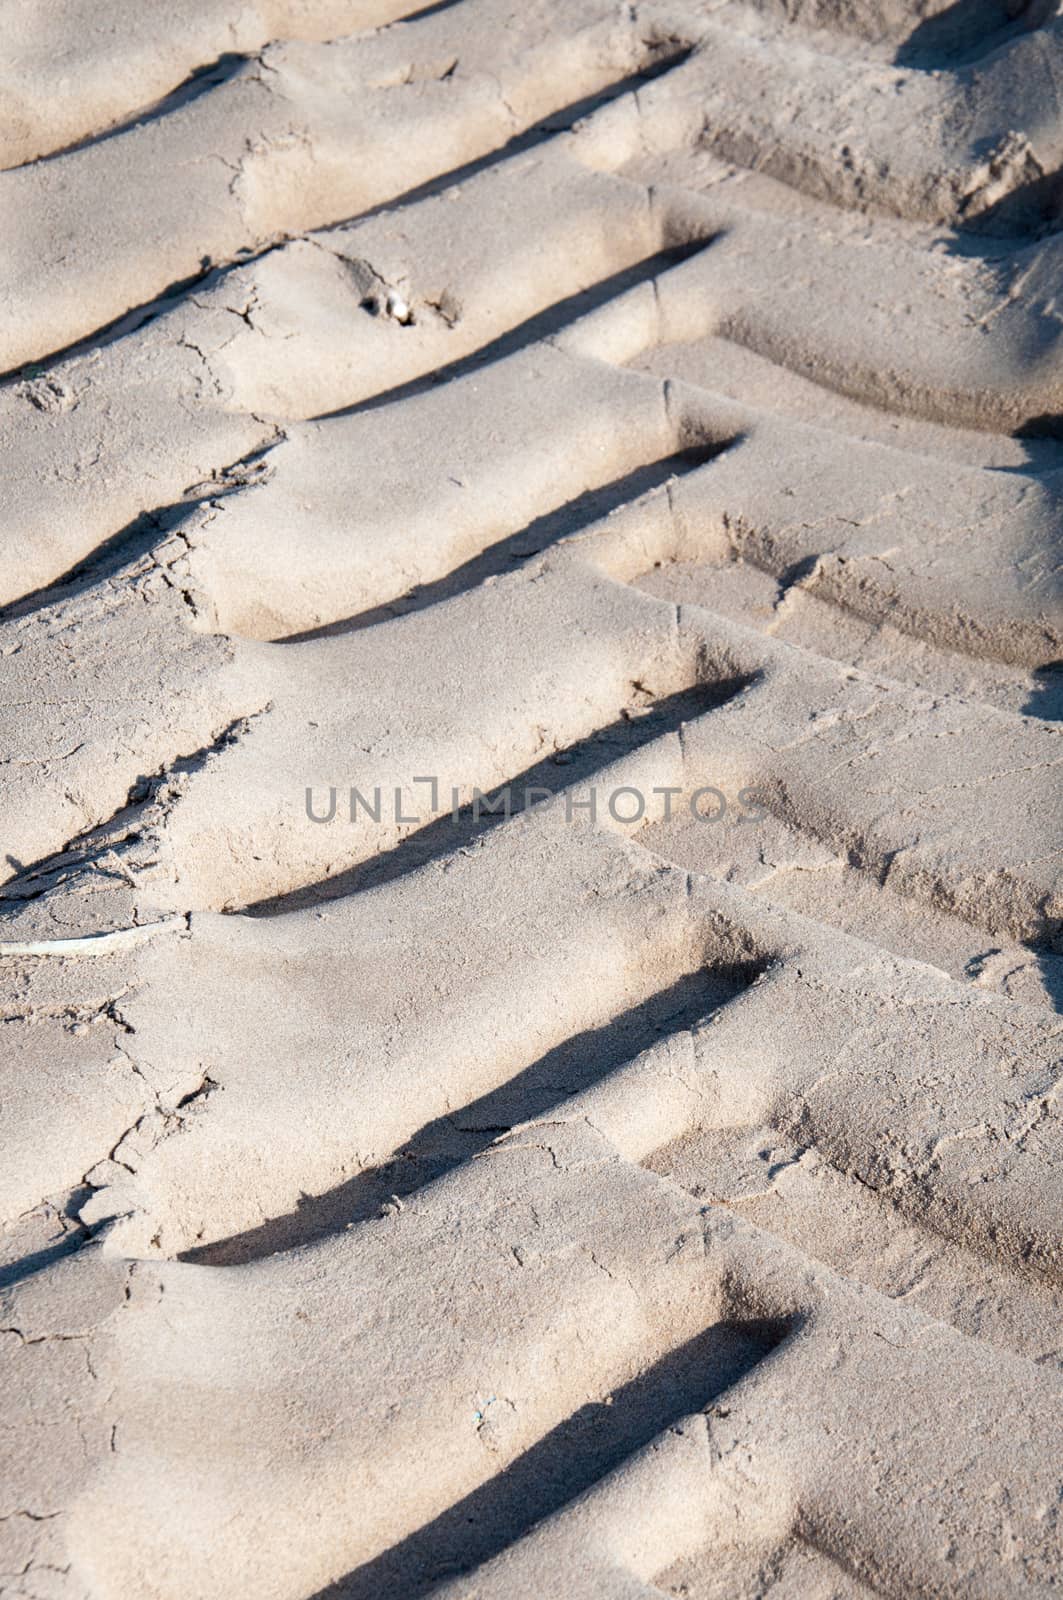 Vertical car track in sand. Mediterranean beach, Spain.